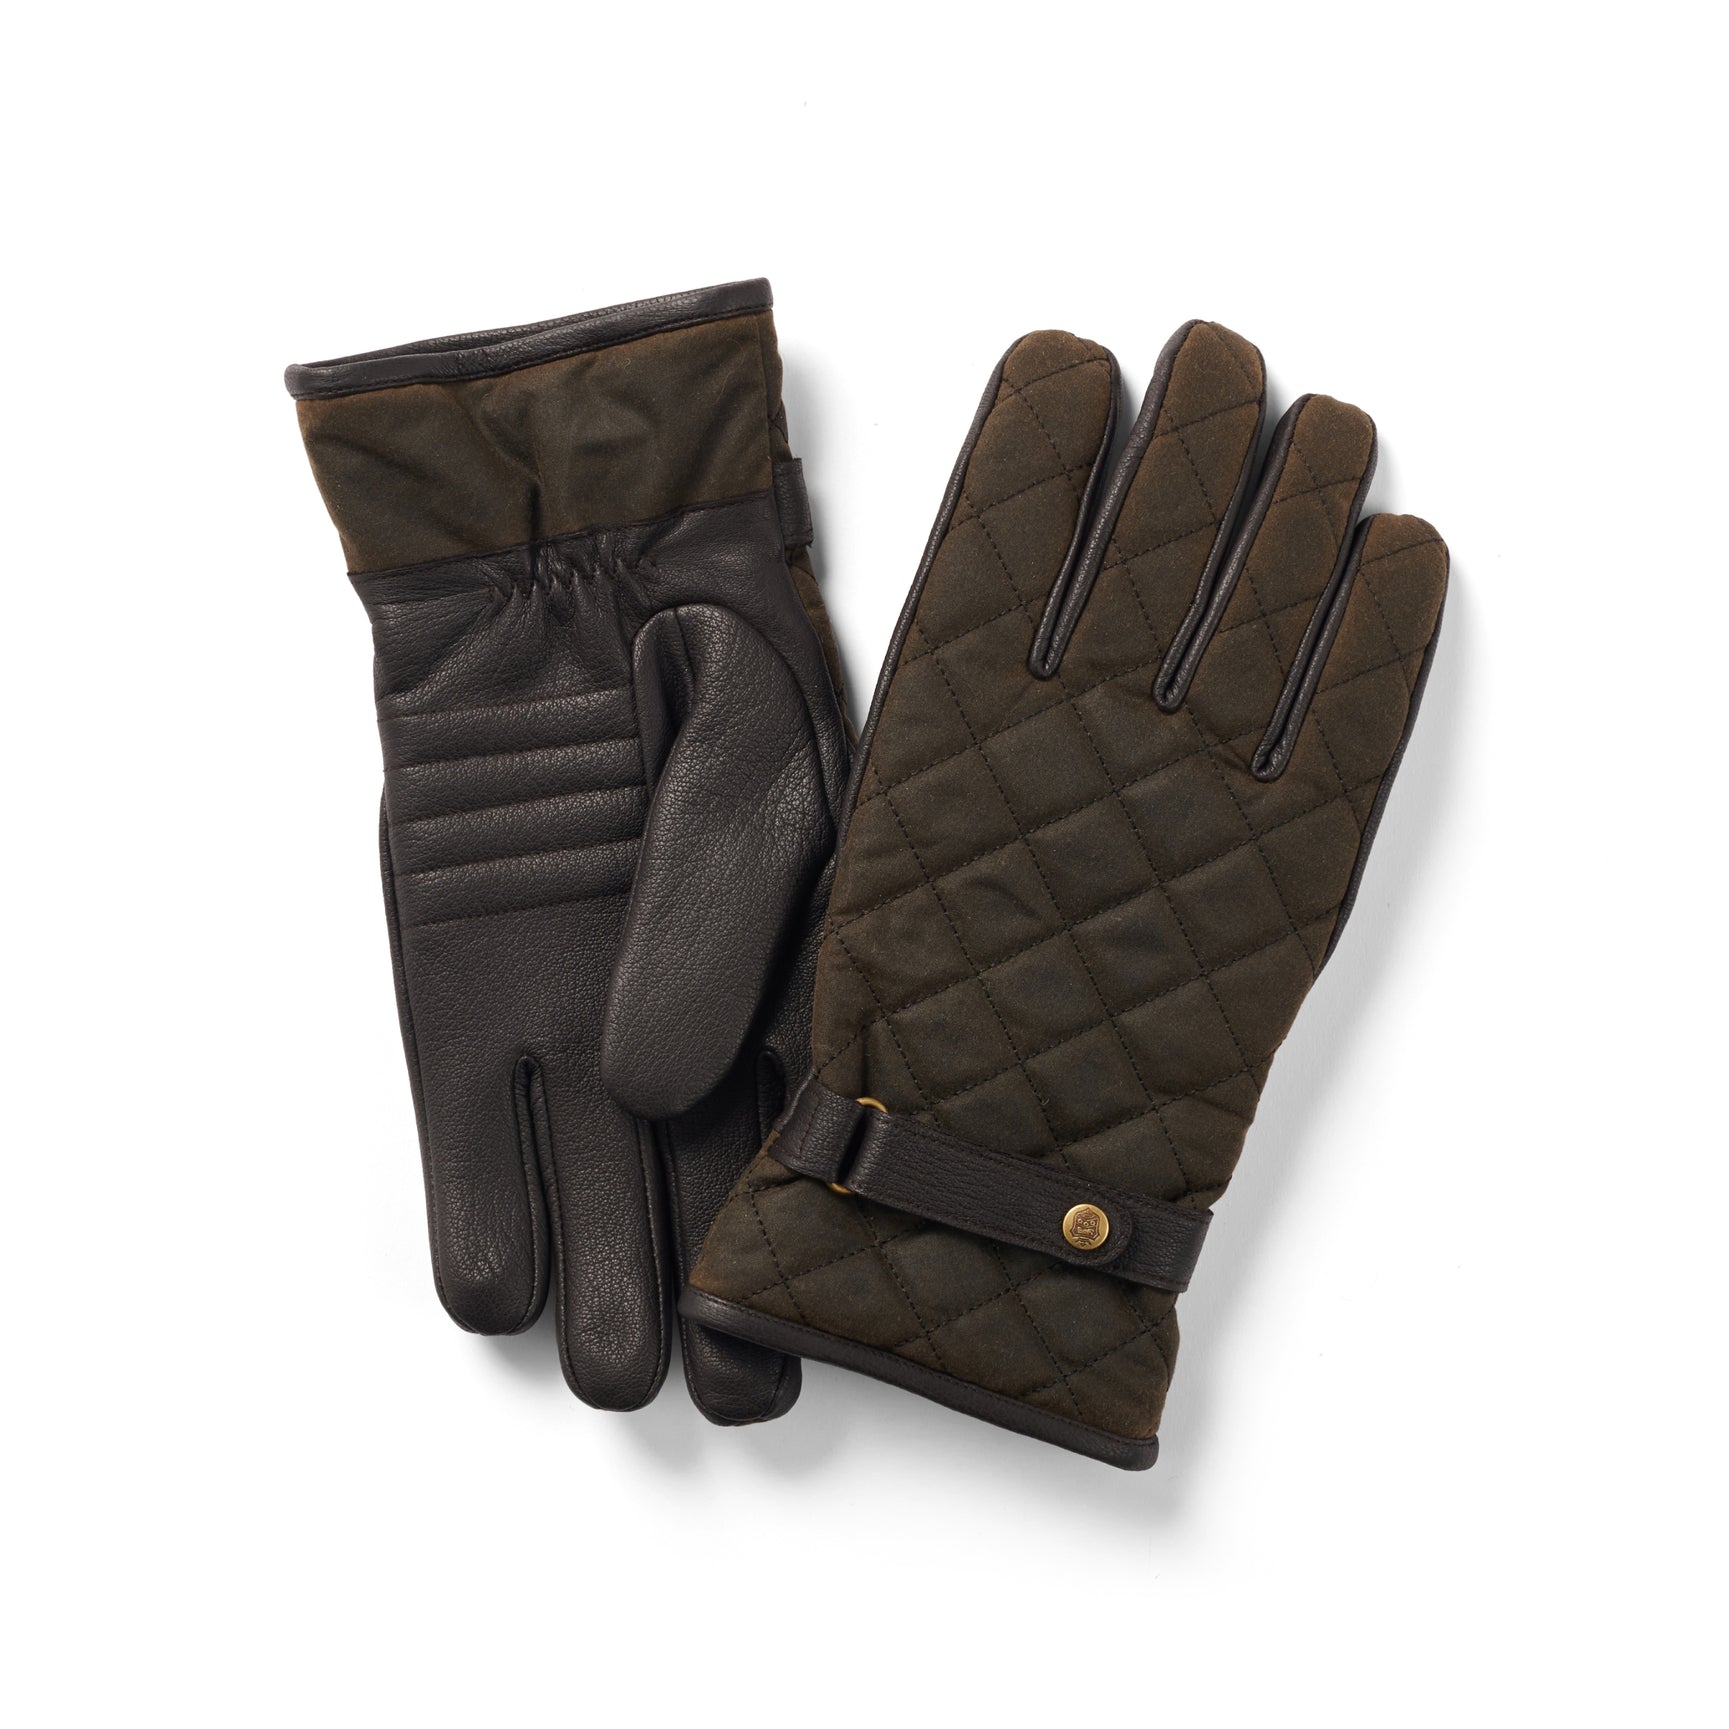 Se Handske Wax-Leather, oilskin/læder, oliven/brun - M hos Godsejeren